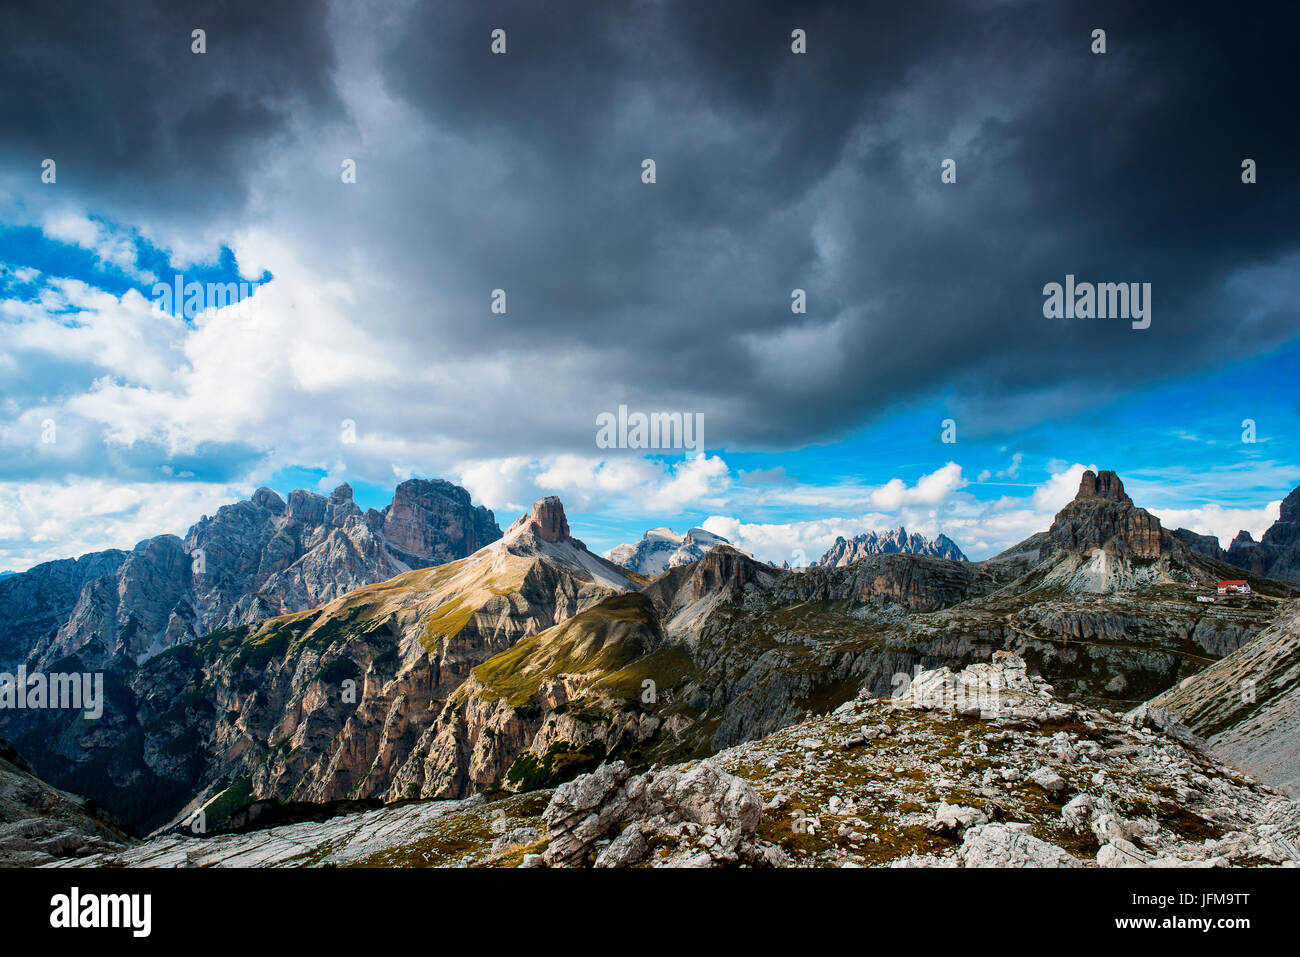 Los Dolomitas de Sesto, Trentino Alto Adige, Italia, Europa Park de las Tre cime di Lavaredo, las montañas Dolomitas tomadas durante un día con nubes, en el fondo se puede ver el Monte paterno y el refugio Locatelli Foto de stock